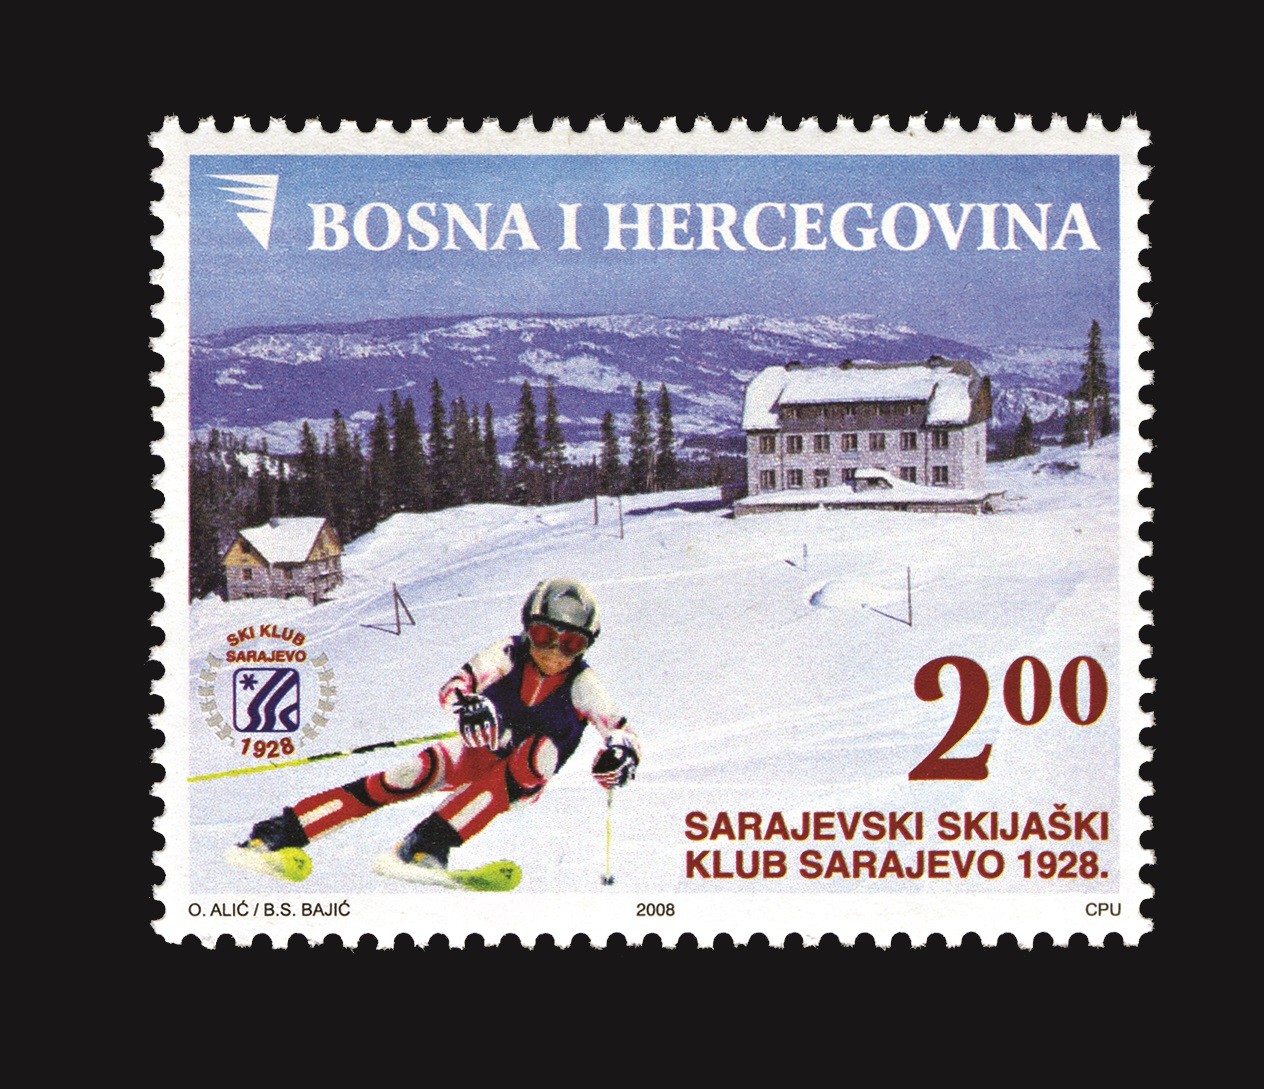 80th-anniv-of-the-sarajevo-ski-club---sarajev